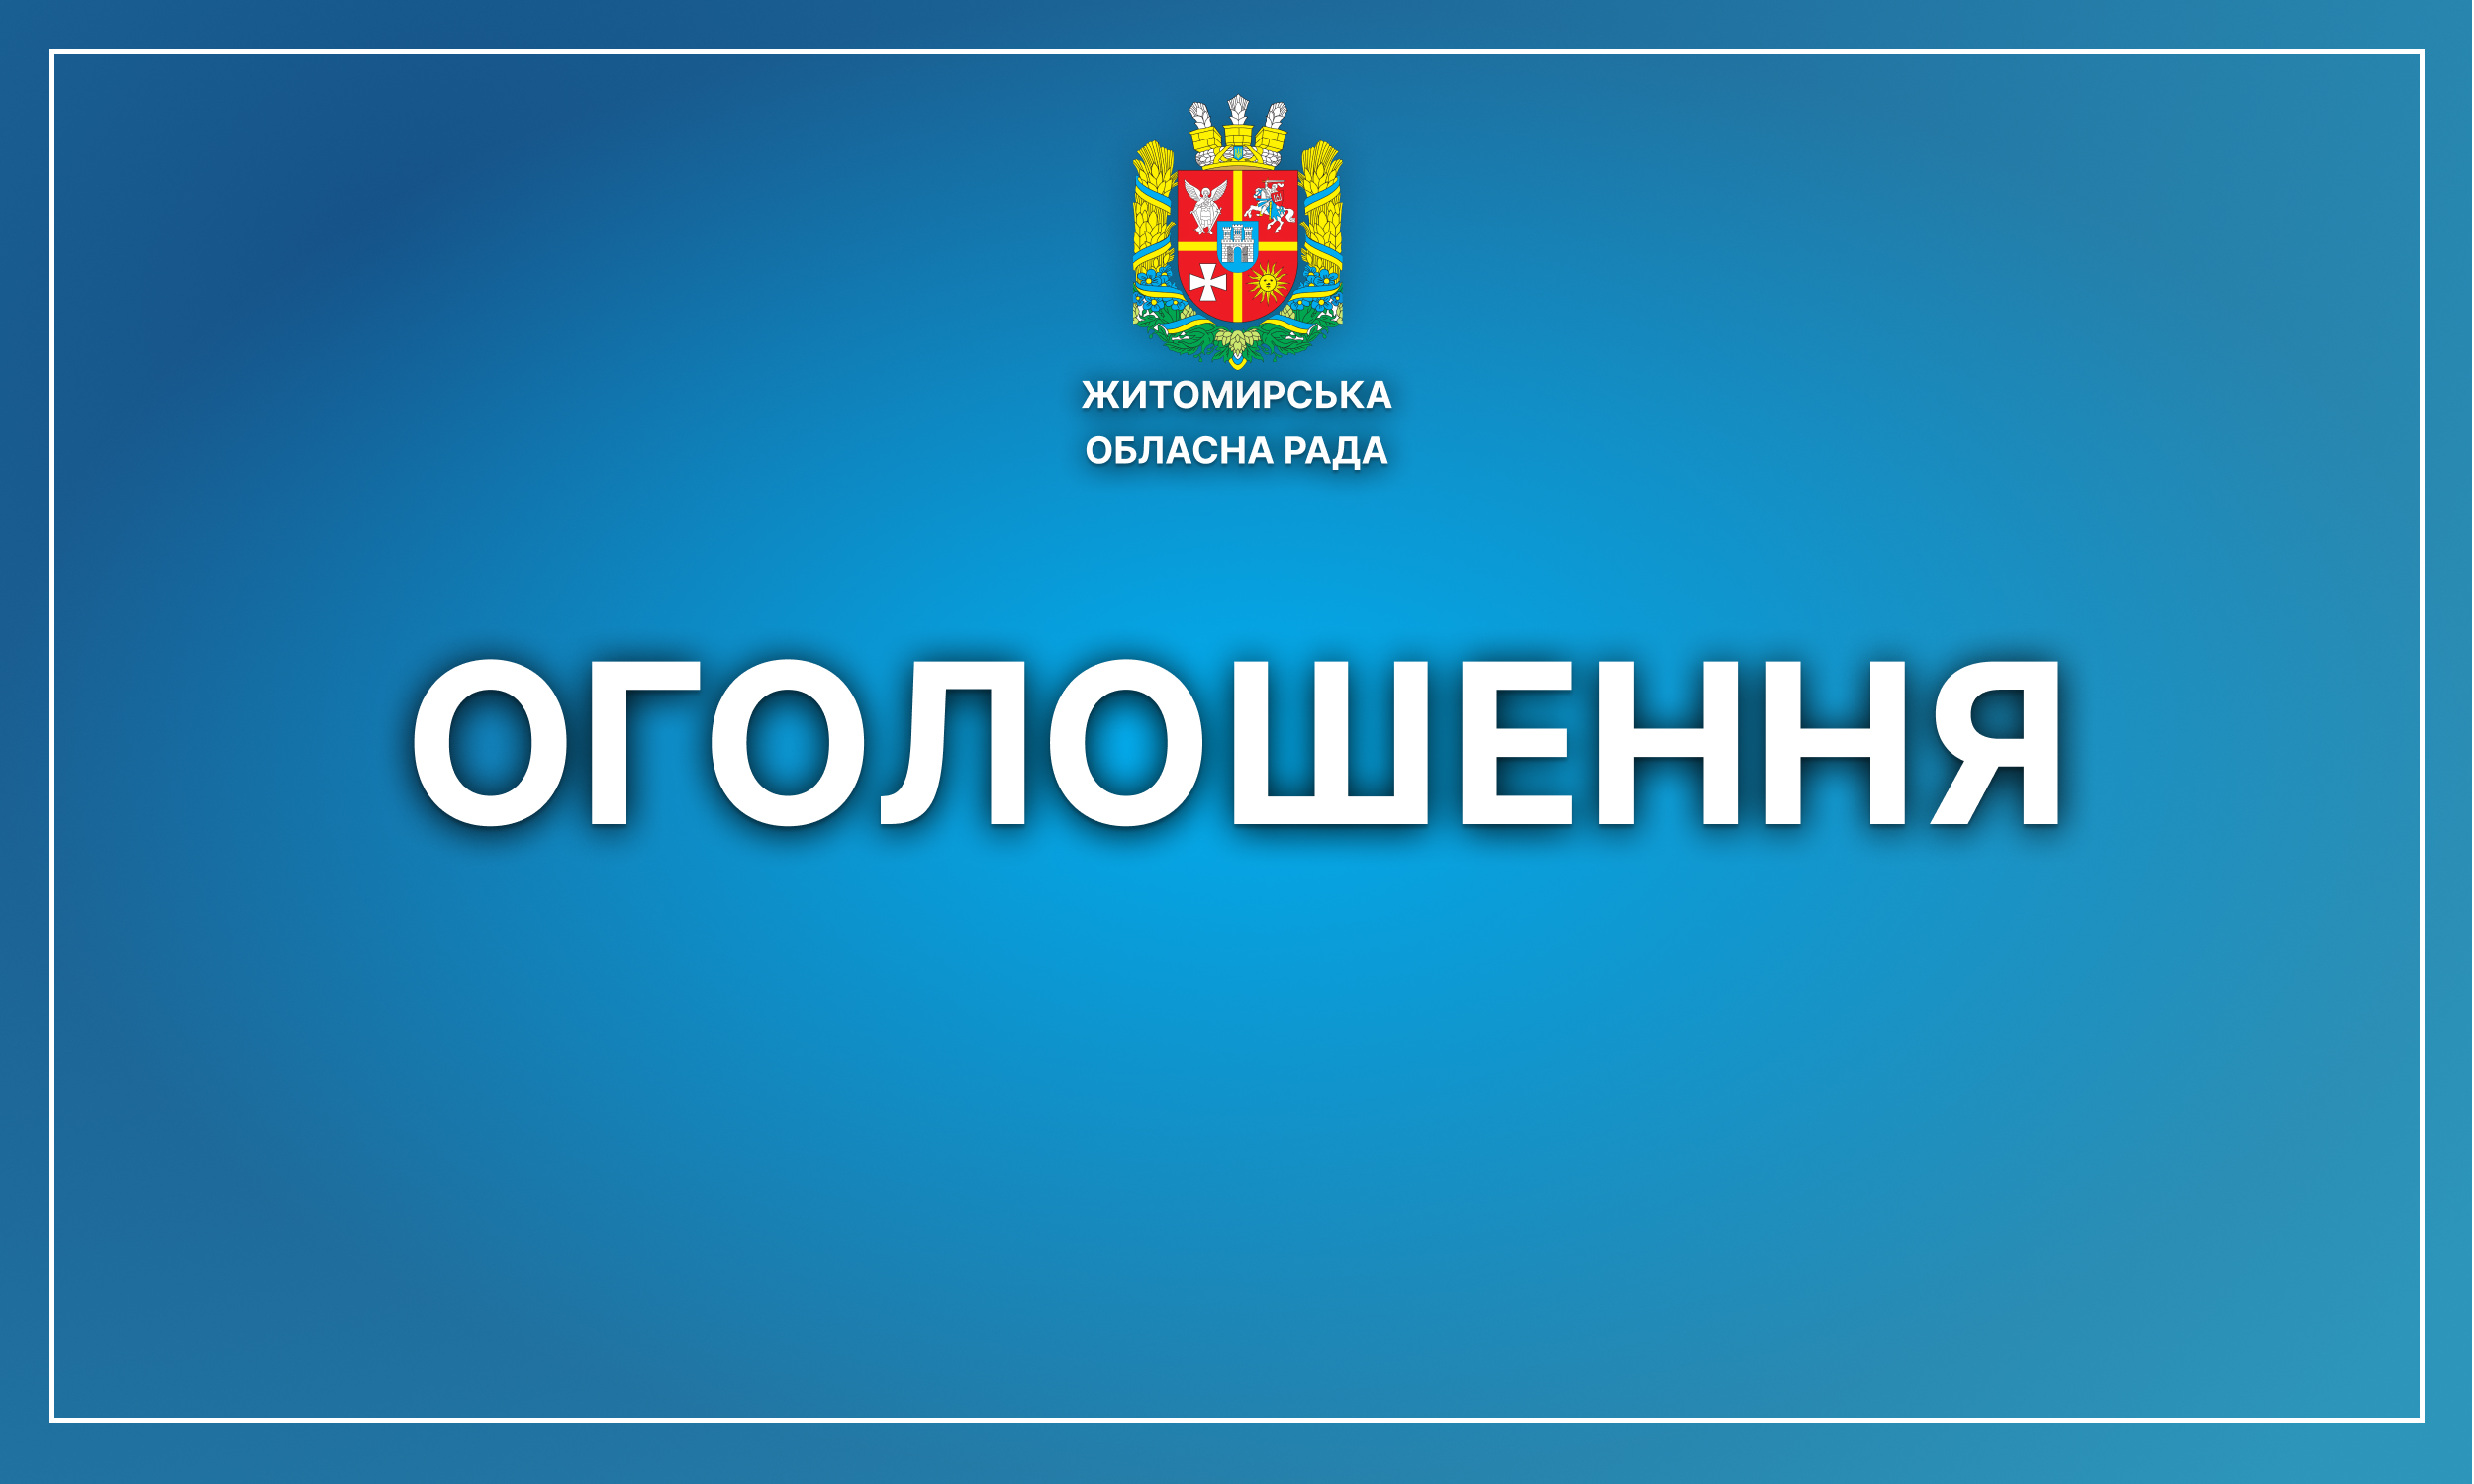 Житомирська обласна рада запрошує долучитися  до обговорення проєкту Антикорупційної програми Житомирської обласної ради на 2023-2025 роки